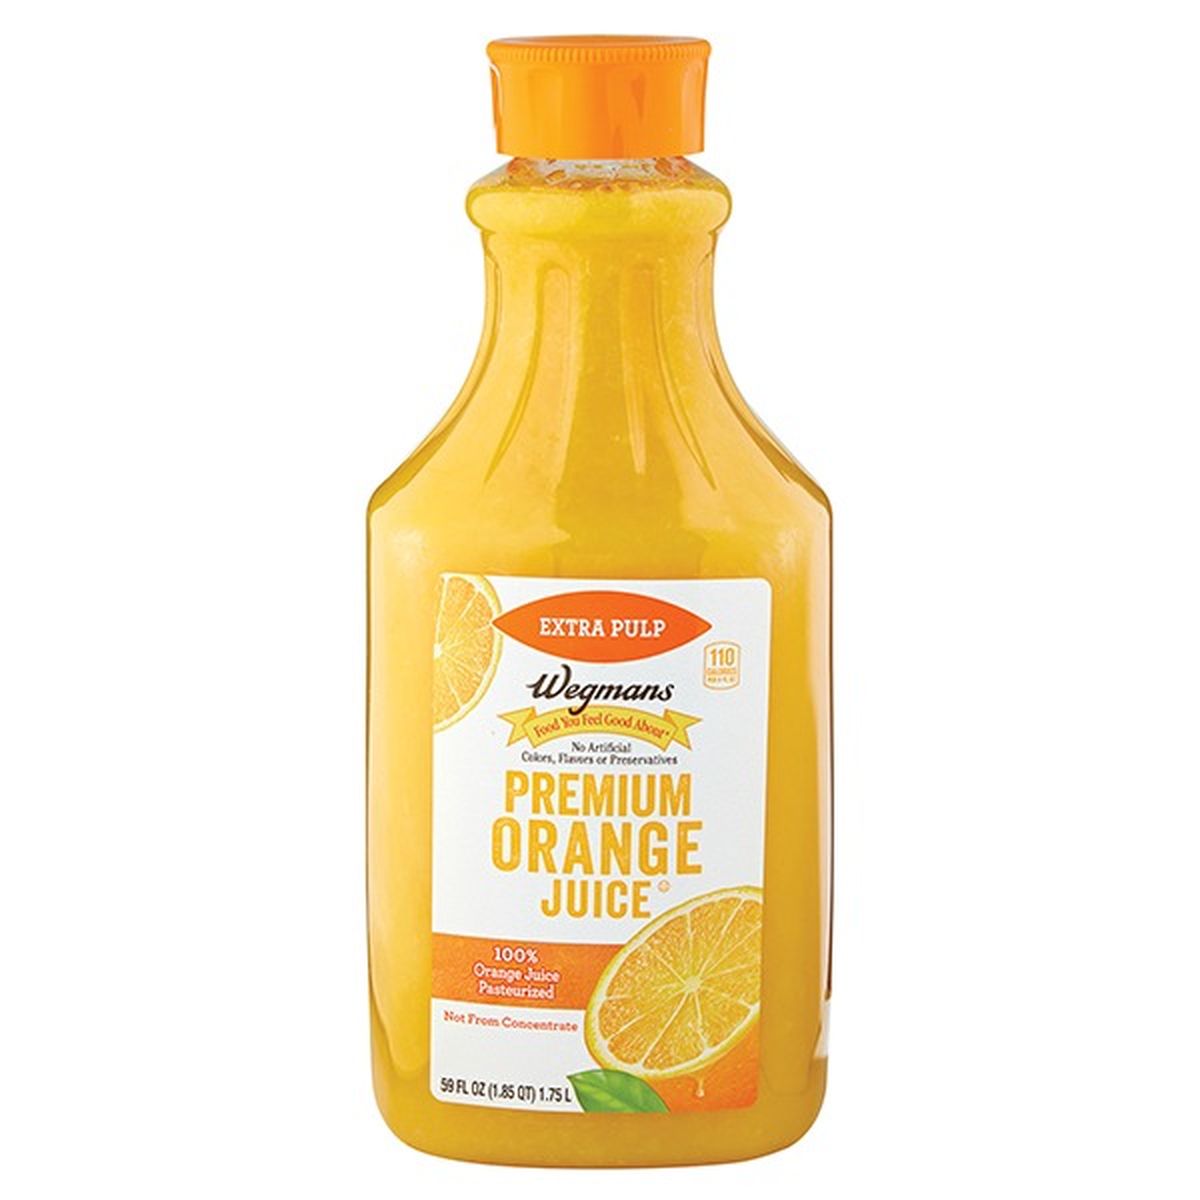 Calories in Wegmans Premium Orange Juice, Extra Pulp